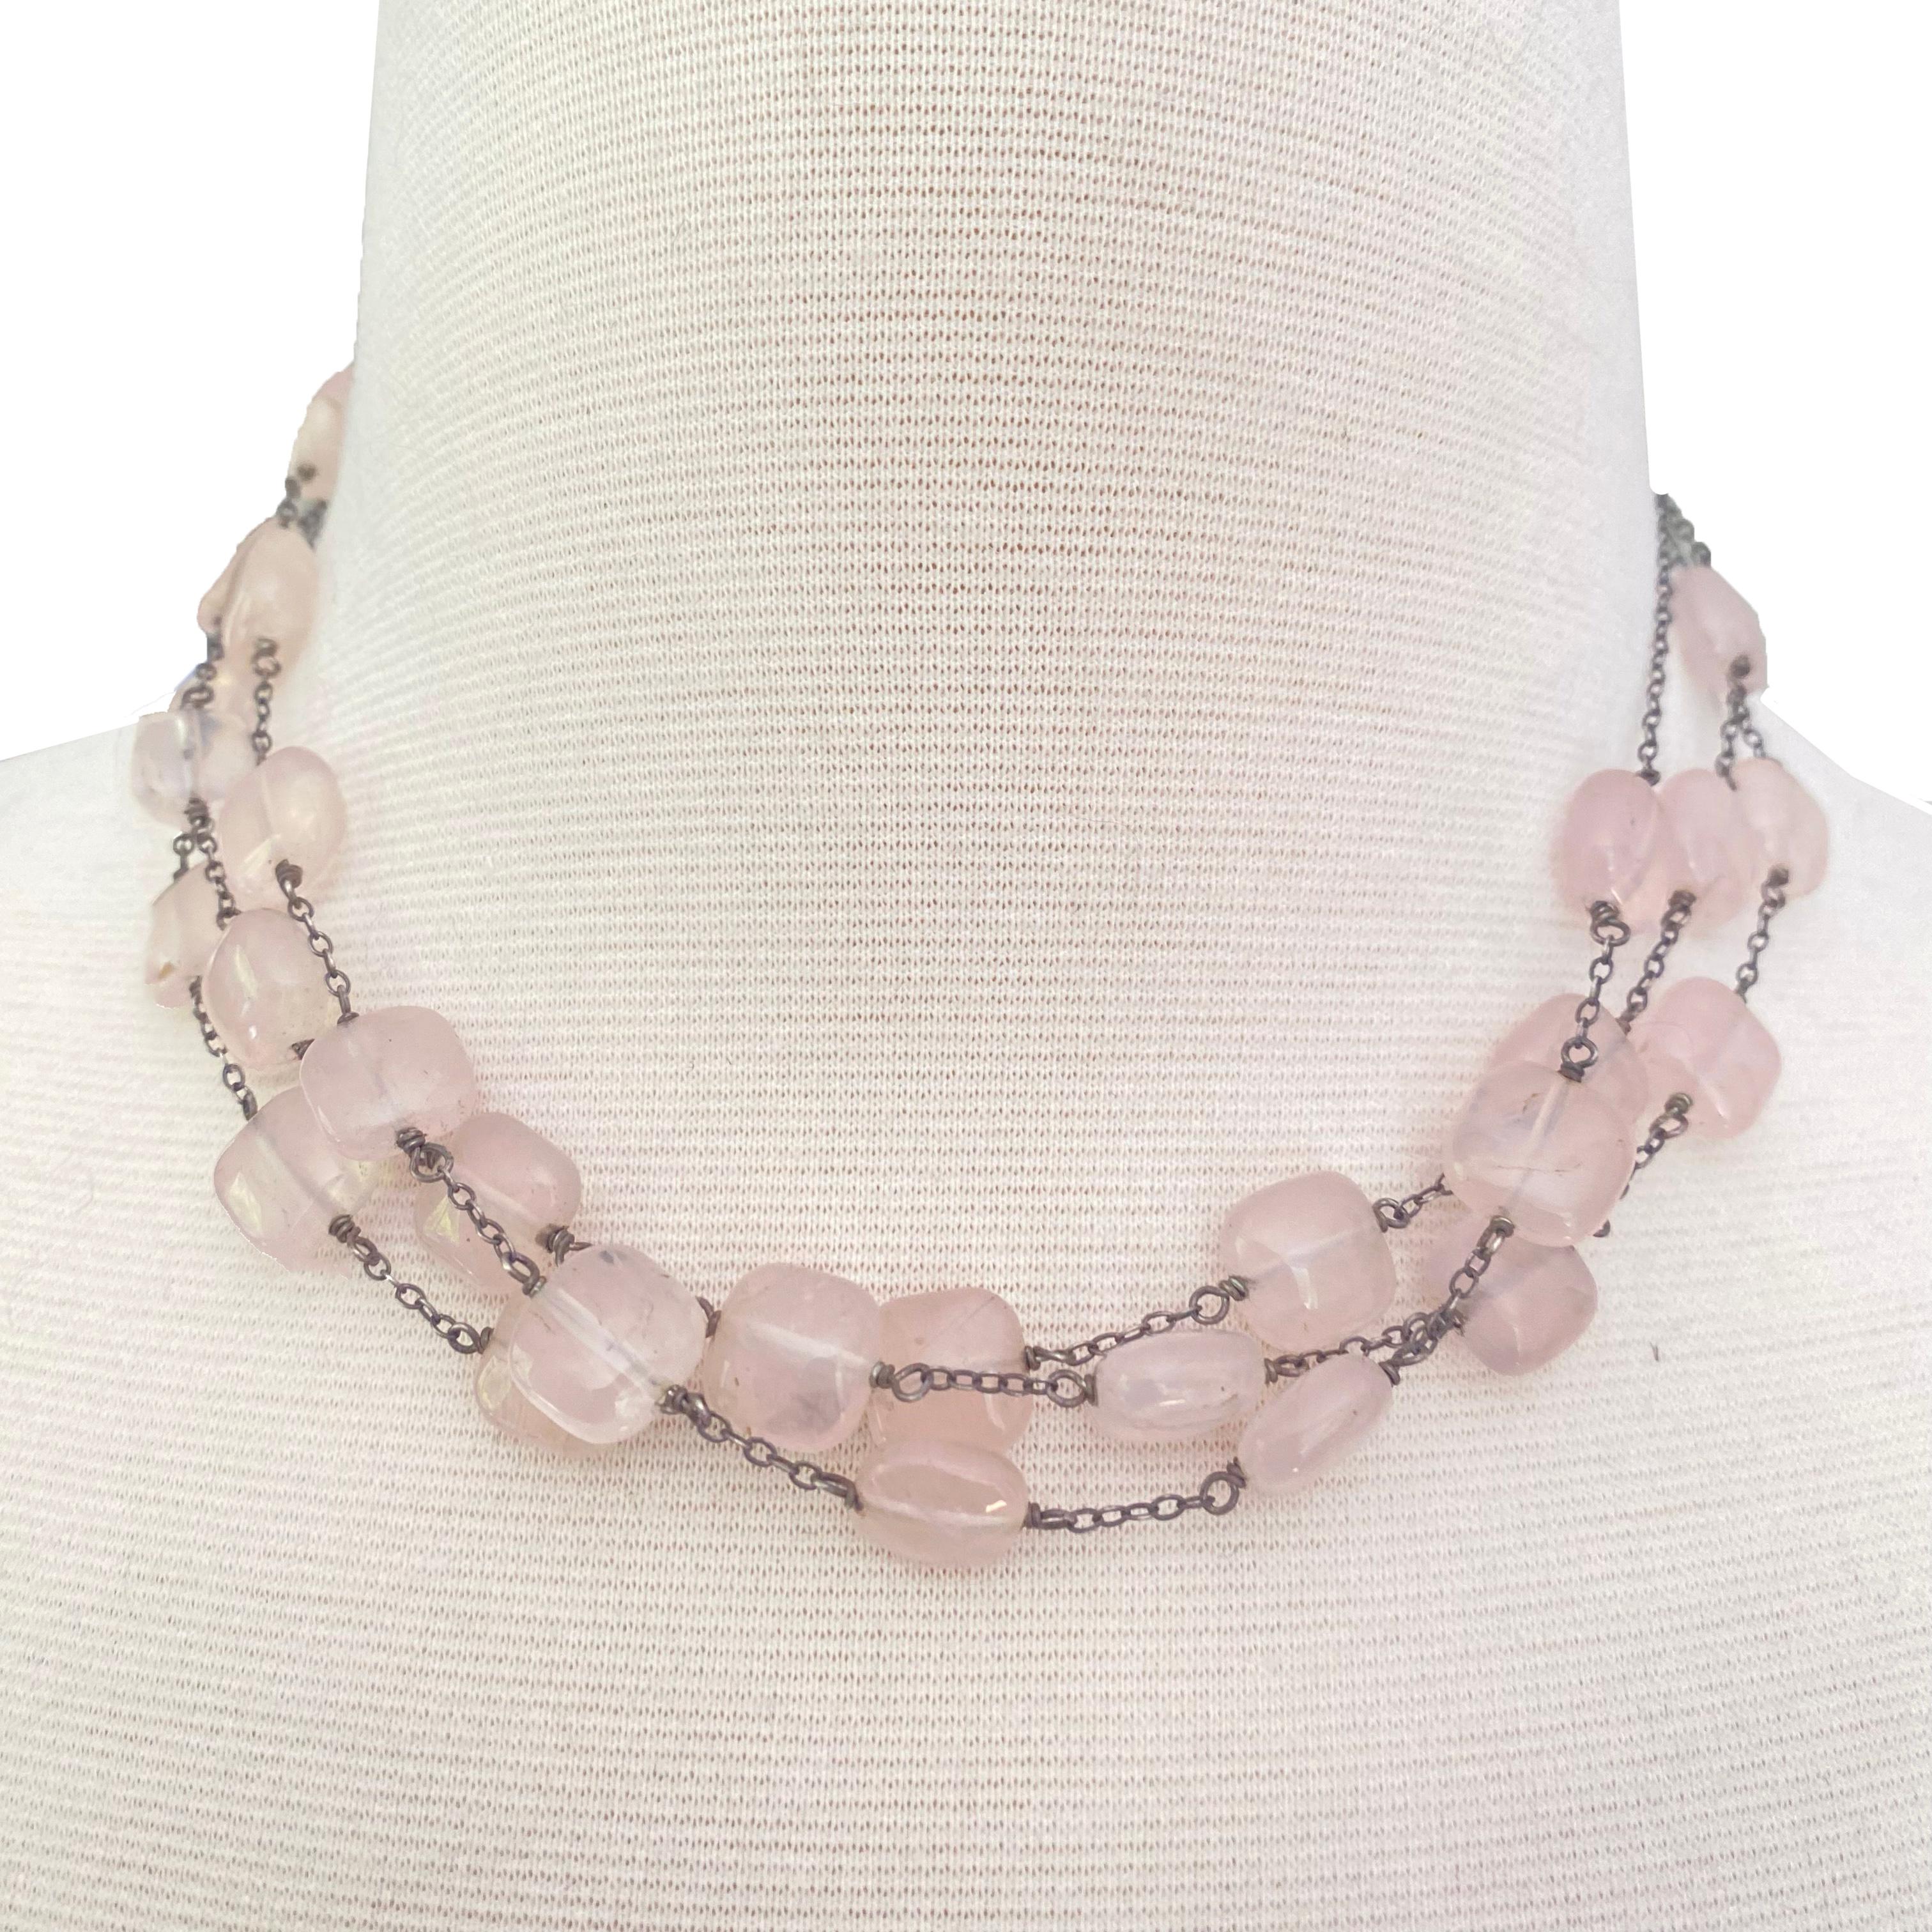 Lovely 3-strand sterling + rose quartz vintage necklace.
About 16